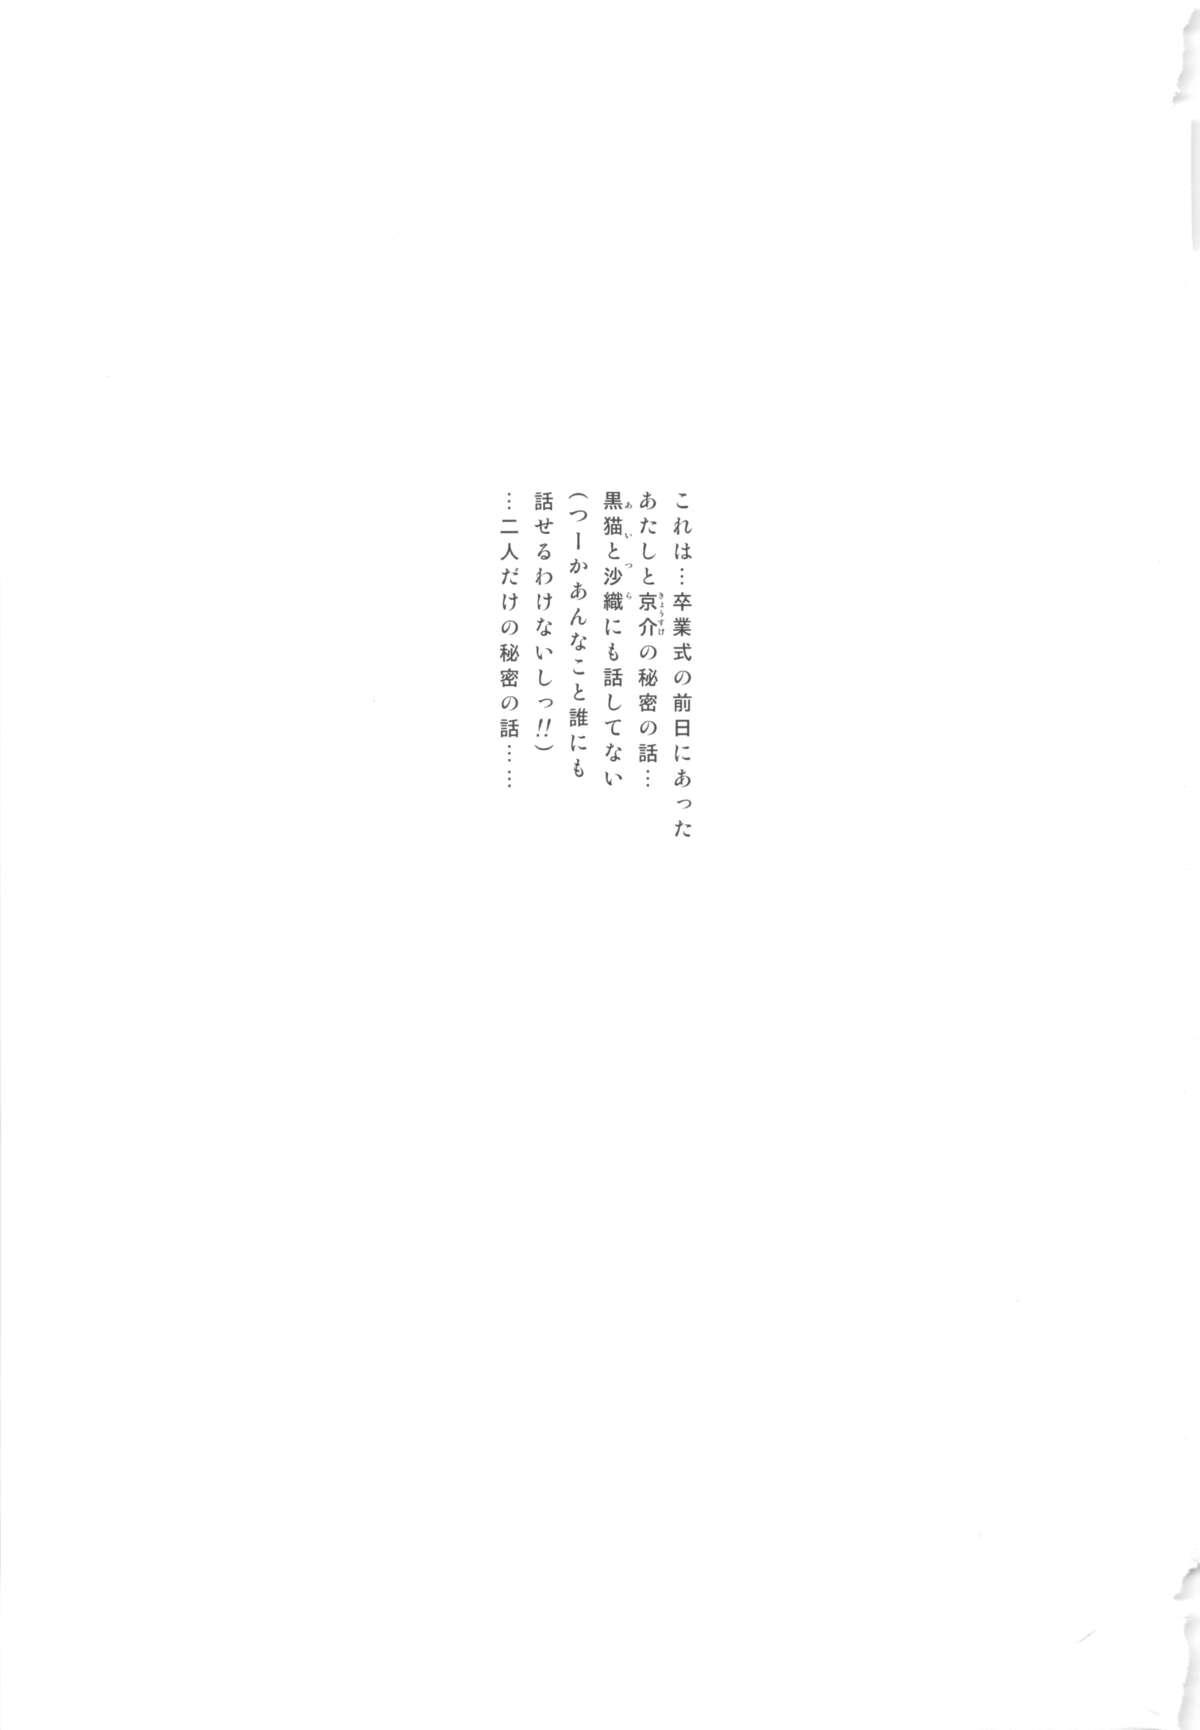 Piss Hoshikuzu Namida - Ore no imouto ga konna ni kawaii wake ga nai Sixtynine - Page 4